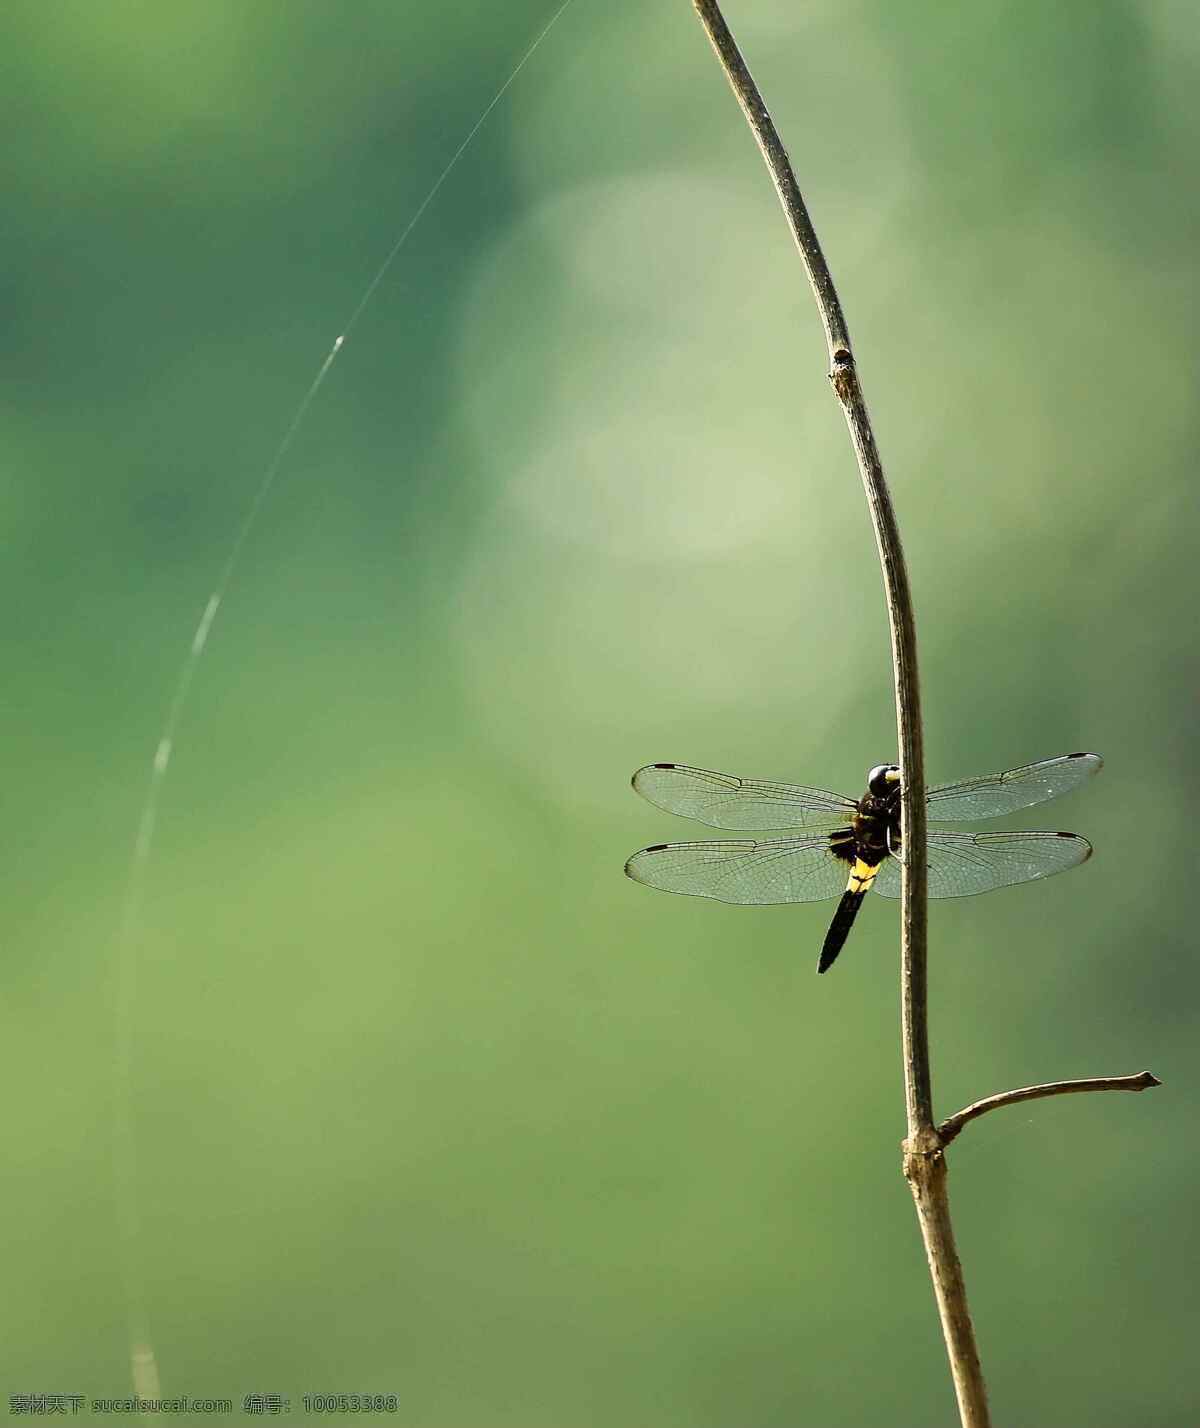 蜻蜓 蜻蜓点水 树枝上的蜻蜓 枯草上的蜻蜓 枯草 绿色 风景摄影 昆虫 生物世界